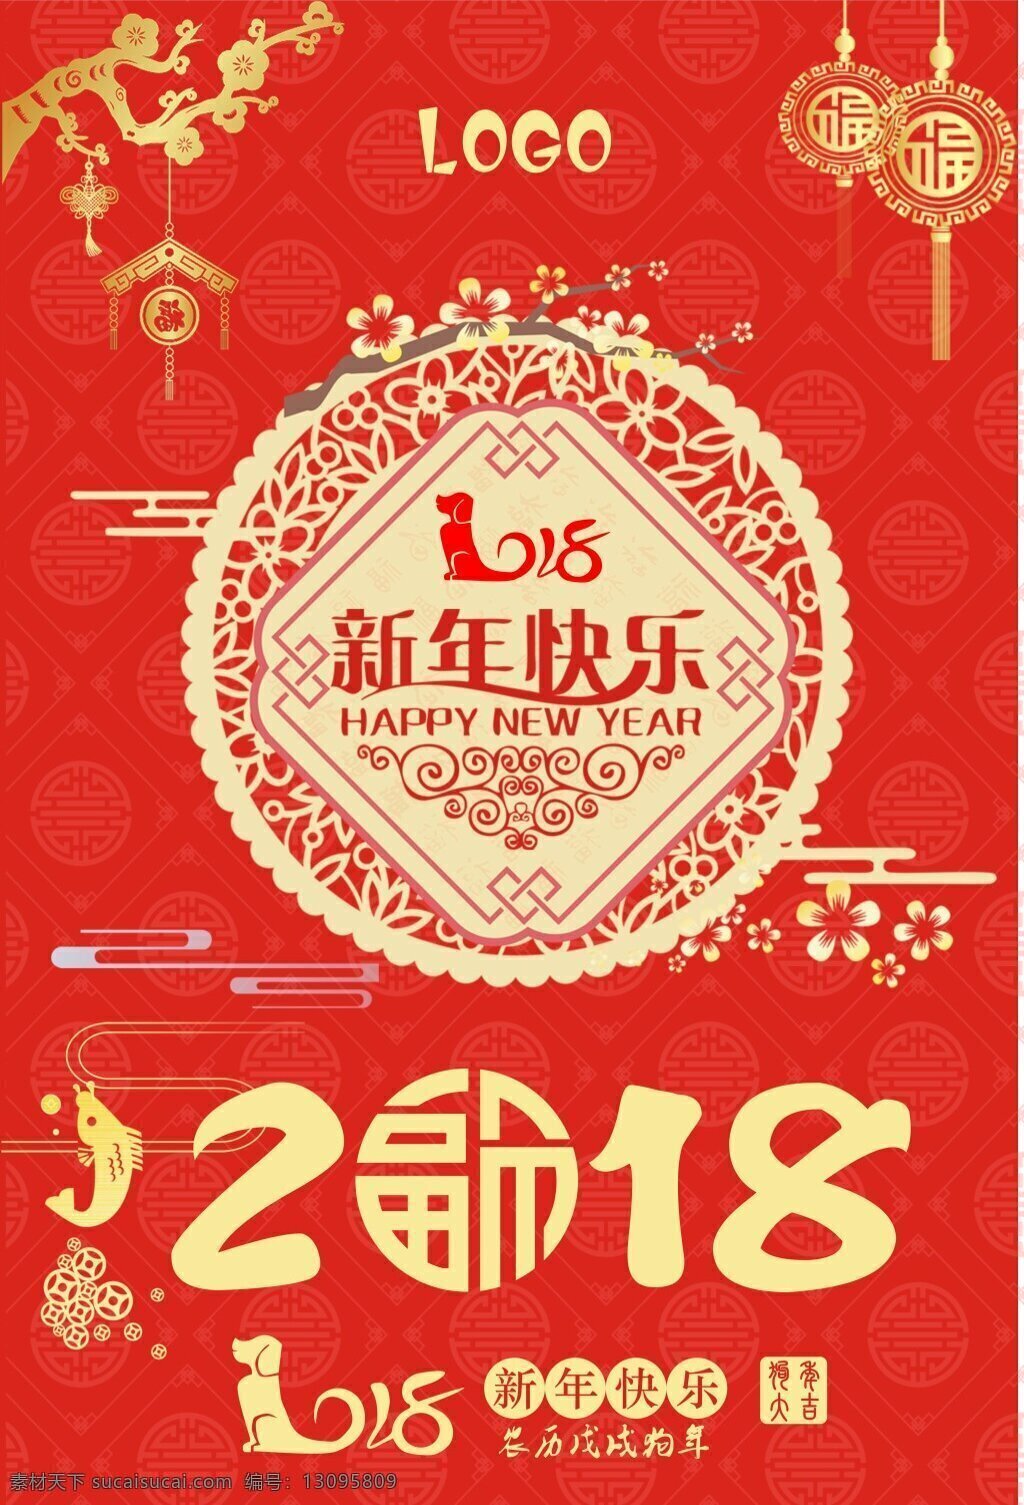 2018 新年 快乐 海报 传统节日 狗年 红色 喜庆 新年海报 新年快乐 中国风